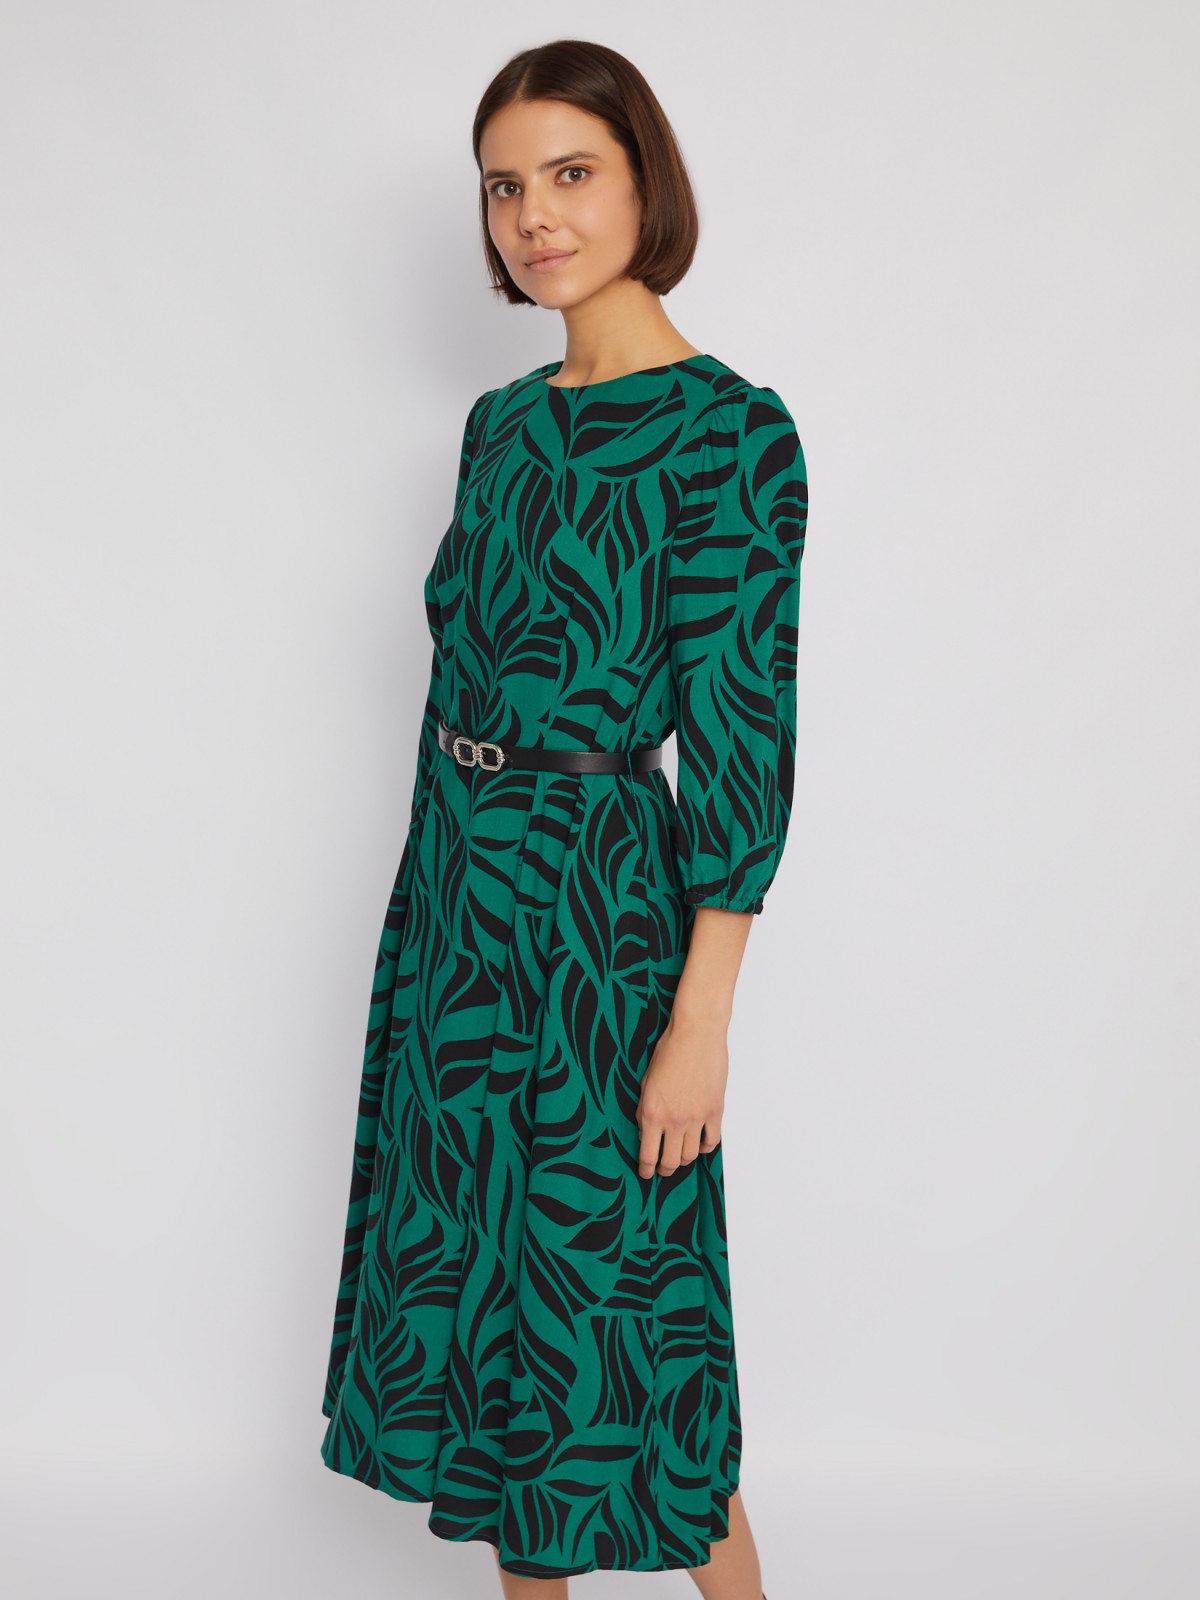 Платье длины миди из вискозы с принтом и ремнём на талию zolla 024128262132, цвет зеленый, размер S - фото 1